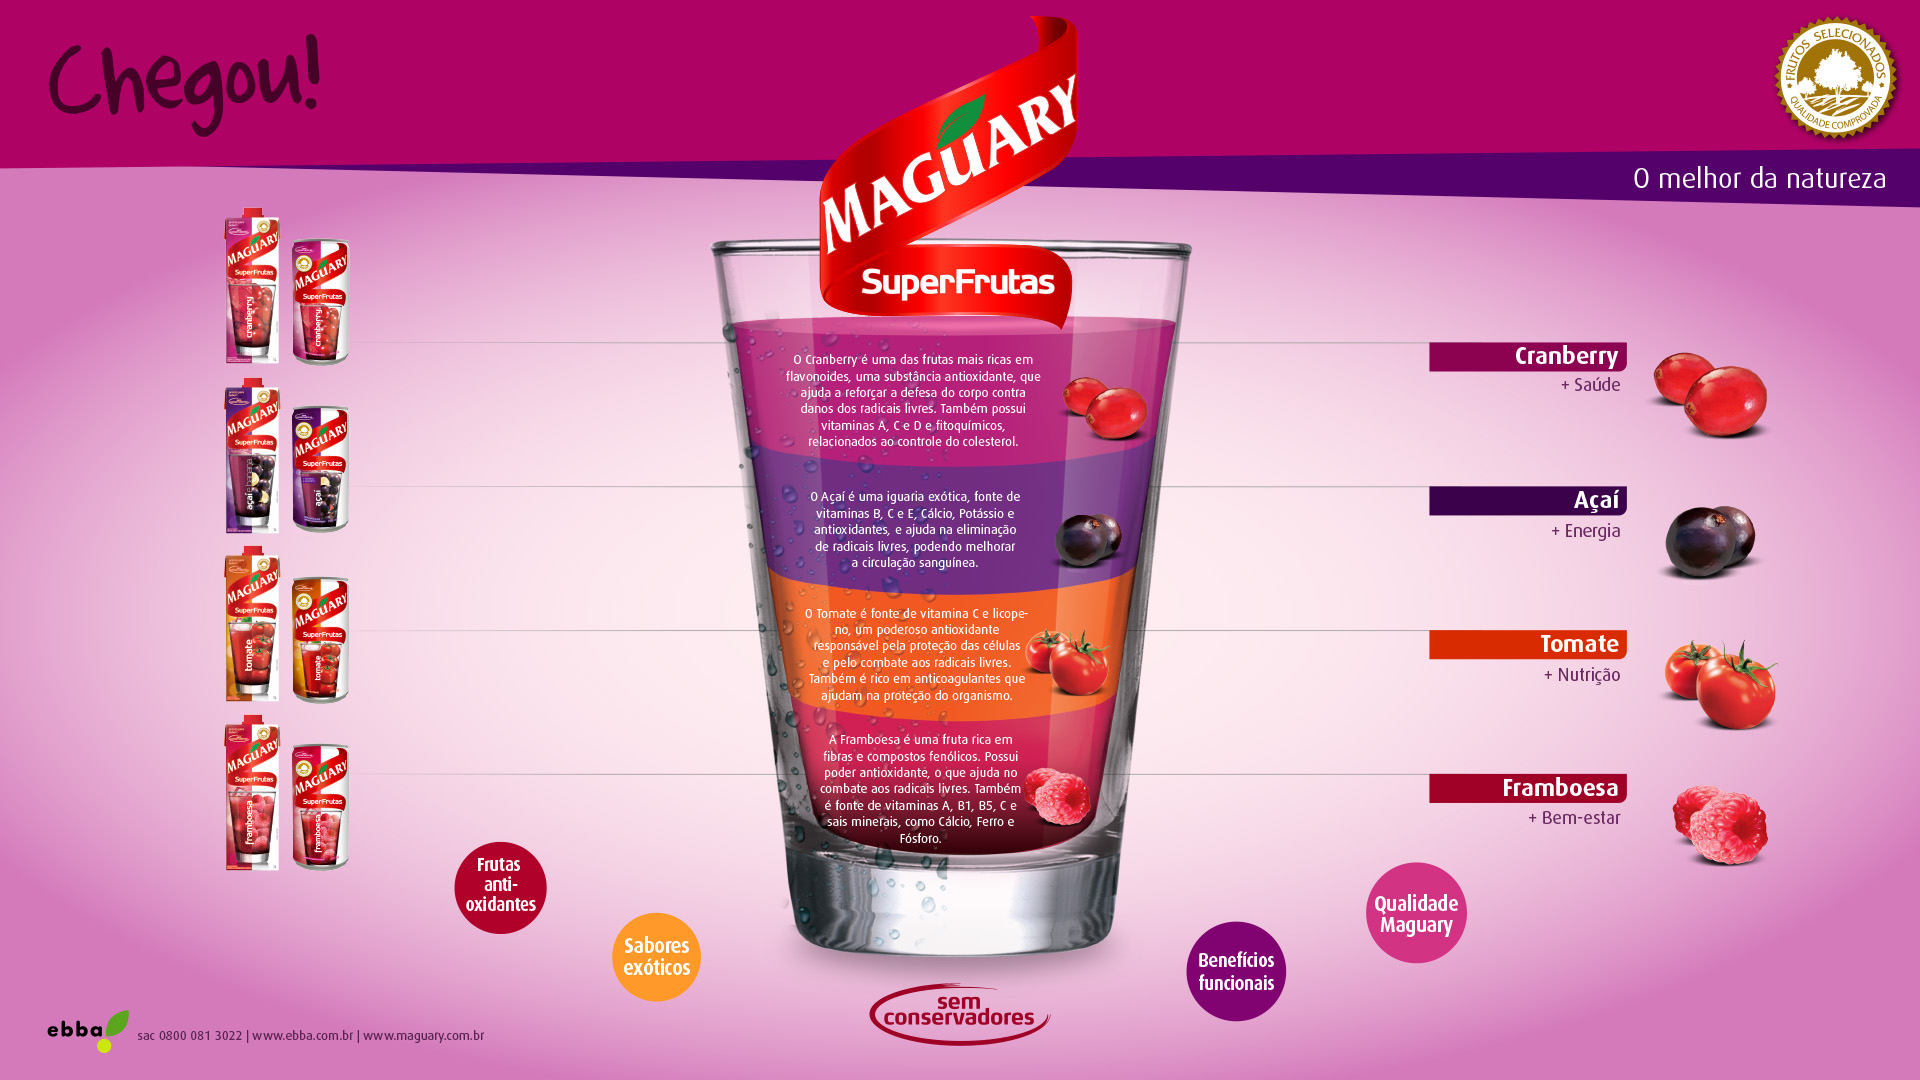 Imagem do key visual para press kit de lançamento de produtos SuperFrutas Maguary.